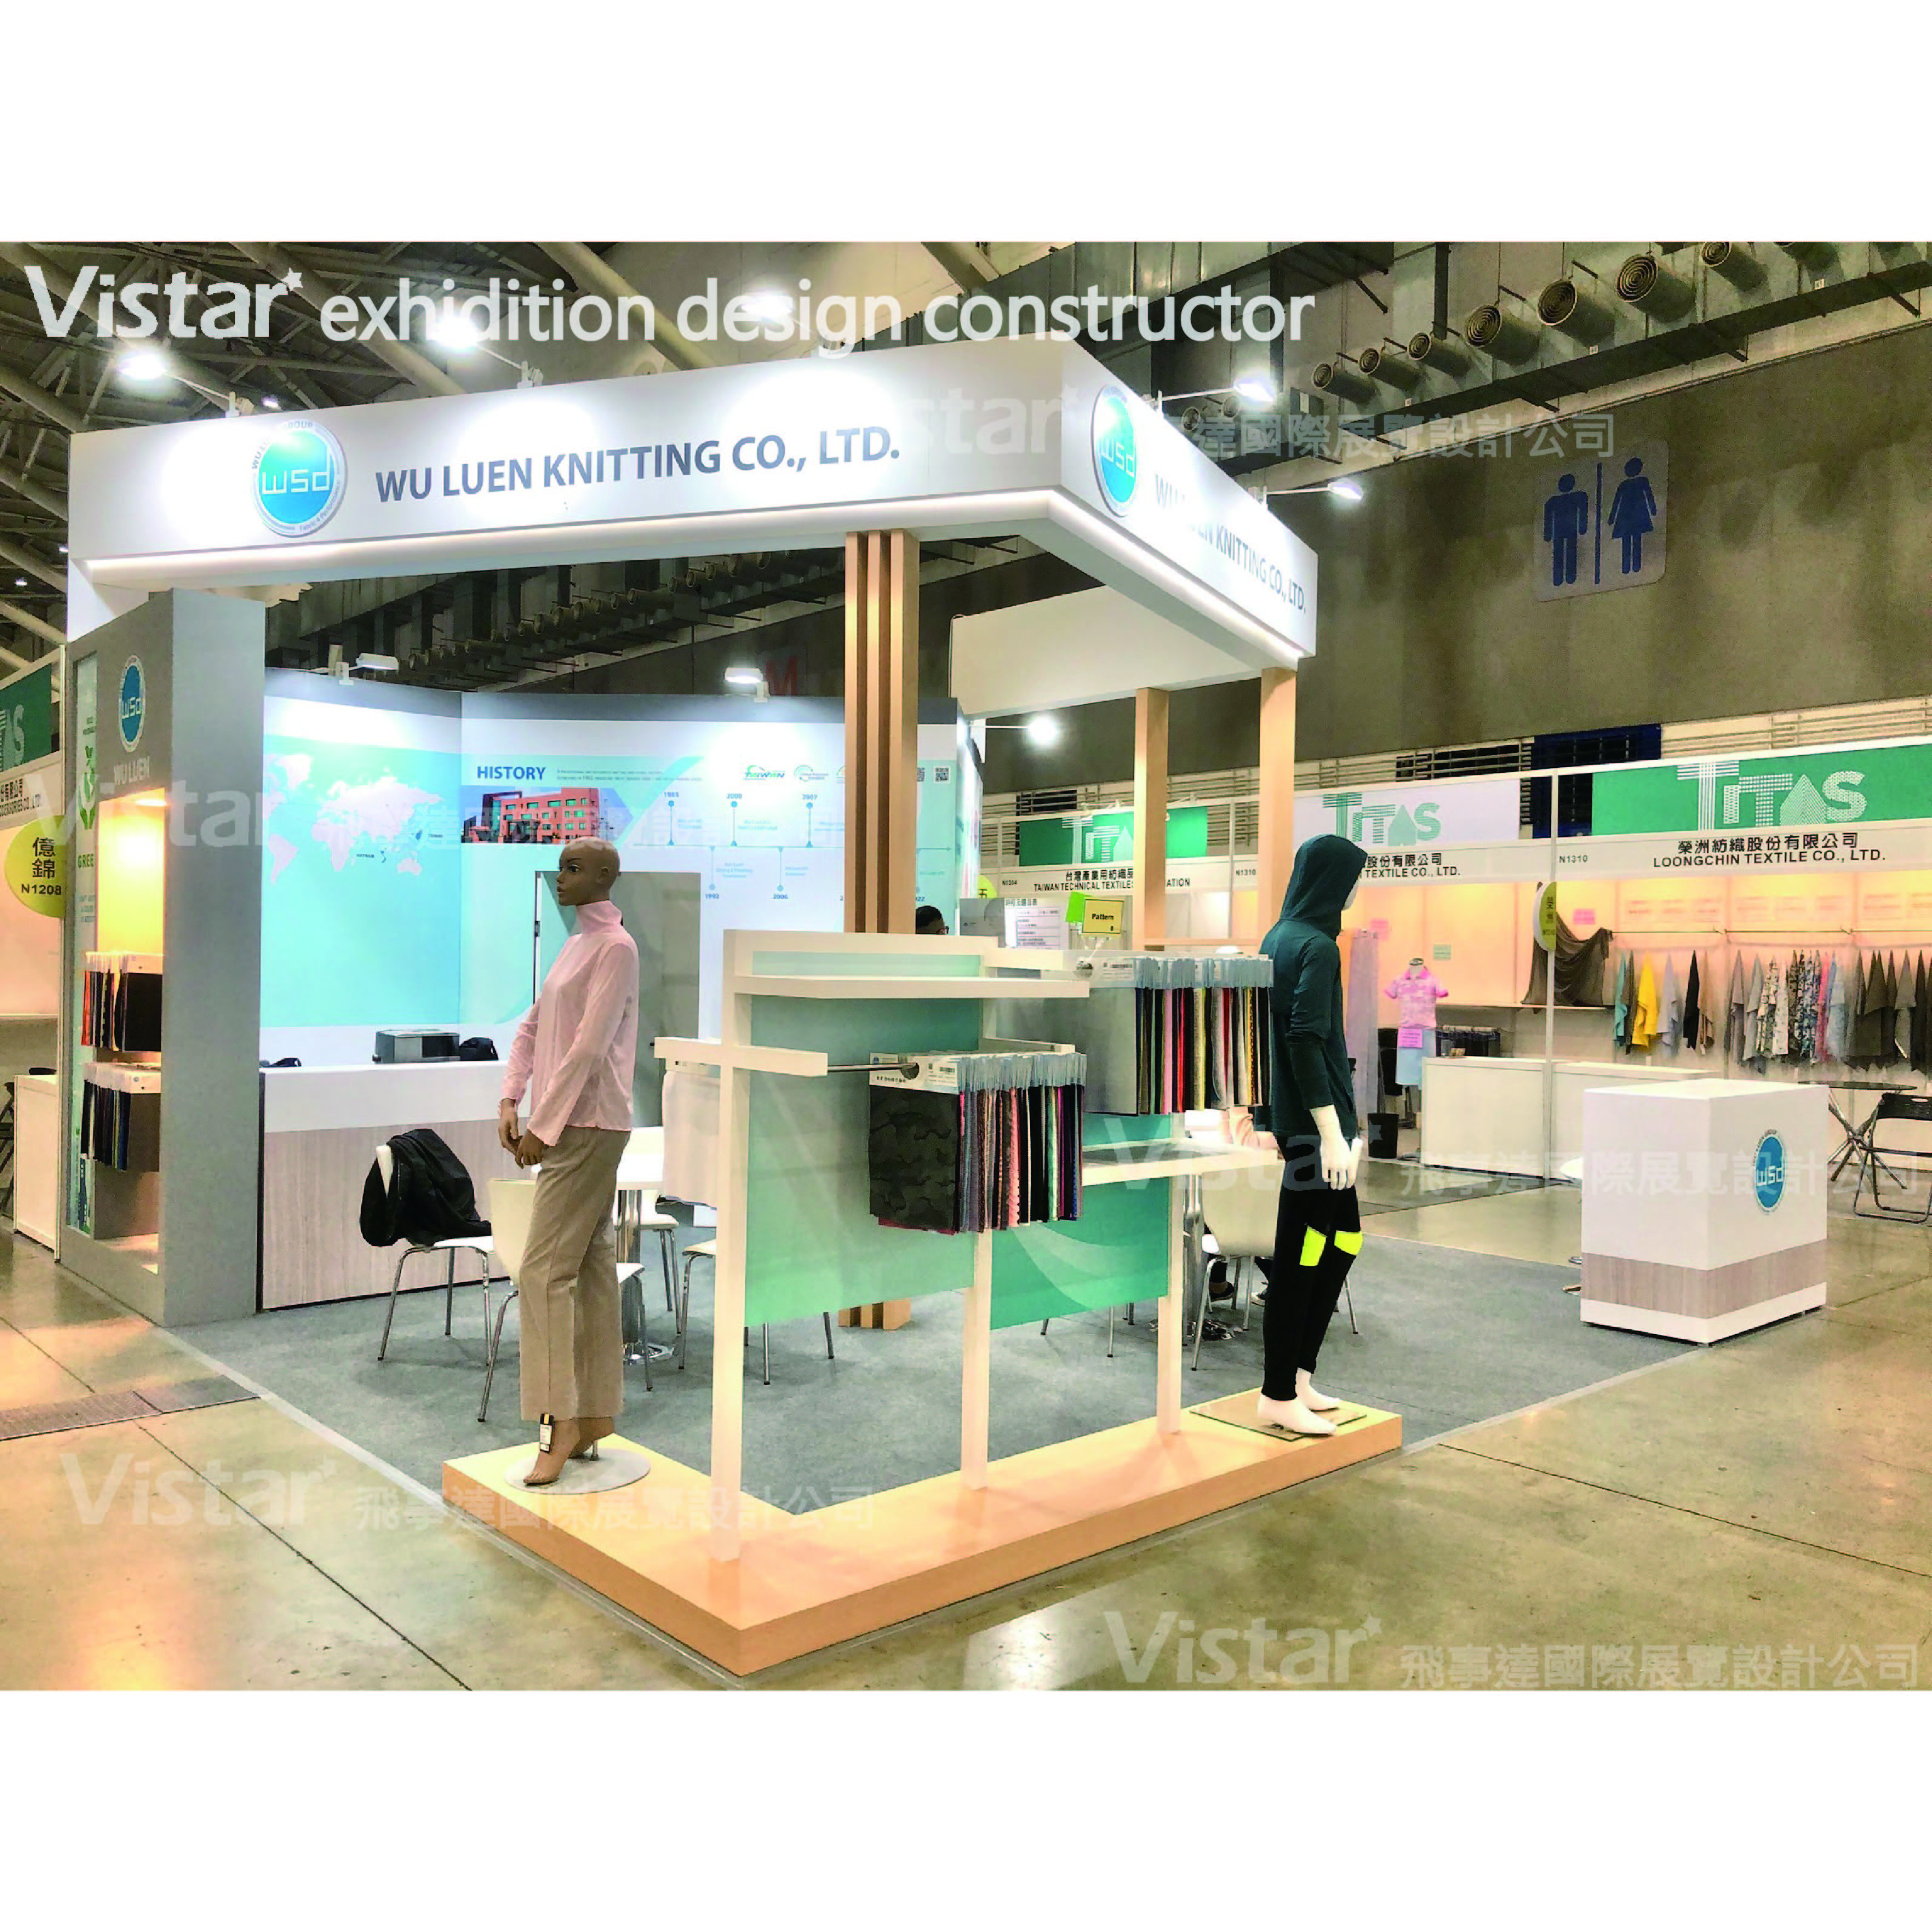 2022 印刷電路版展 TPCA show Taipei, 飛事達國際展覽設計有限公司, www.vistargp.com